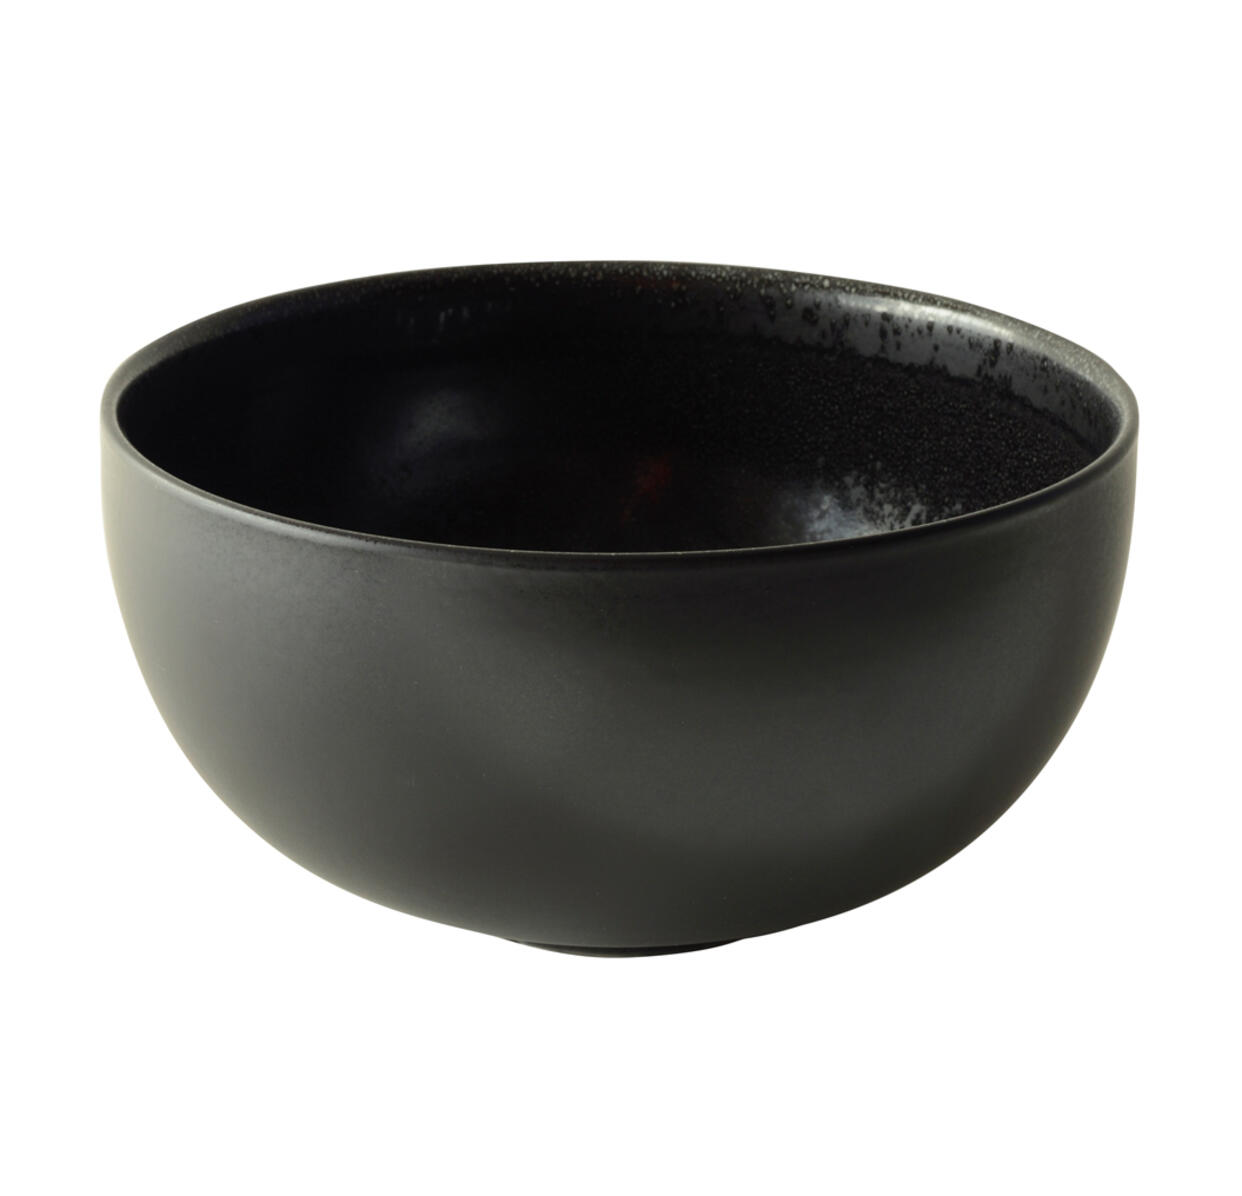 serving bowl m tourron céleste ceramic manufacturer